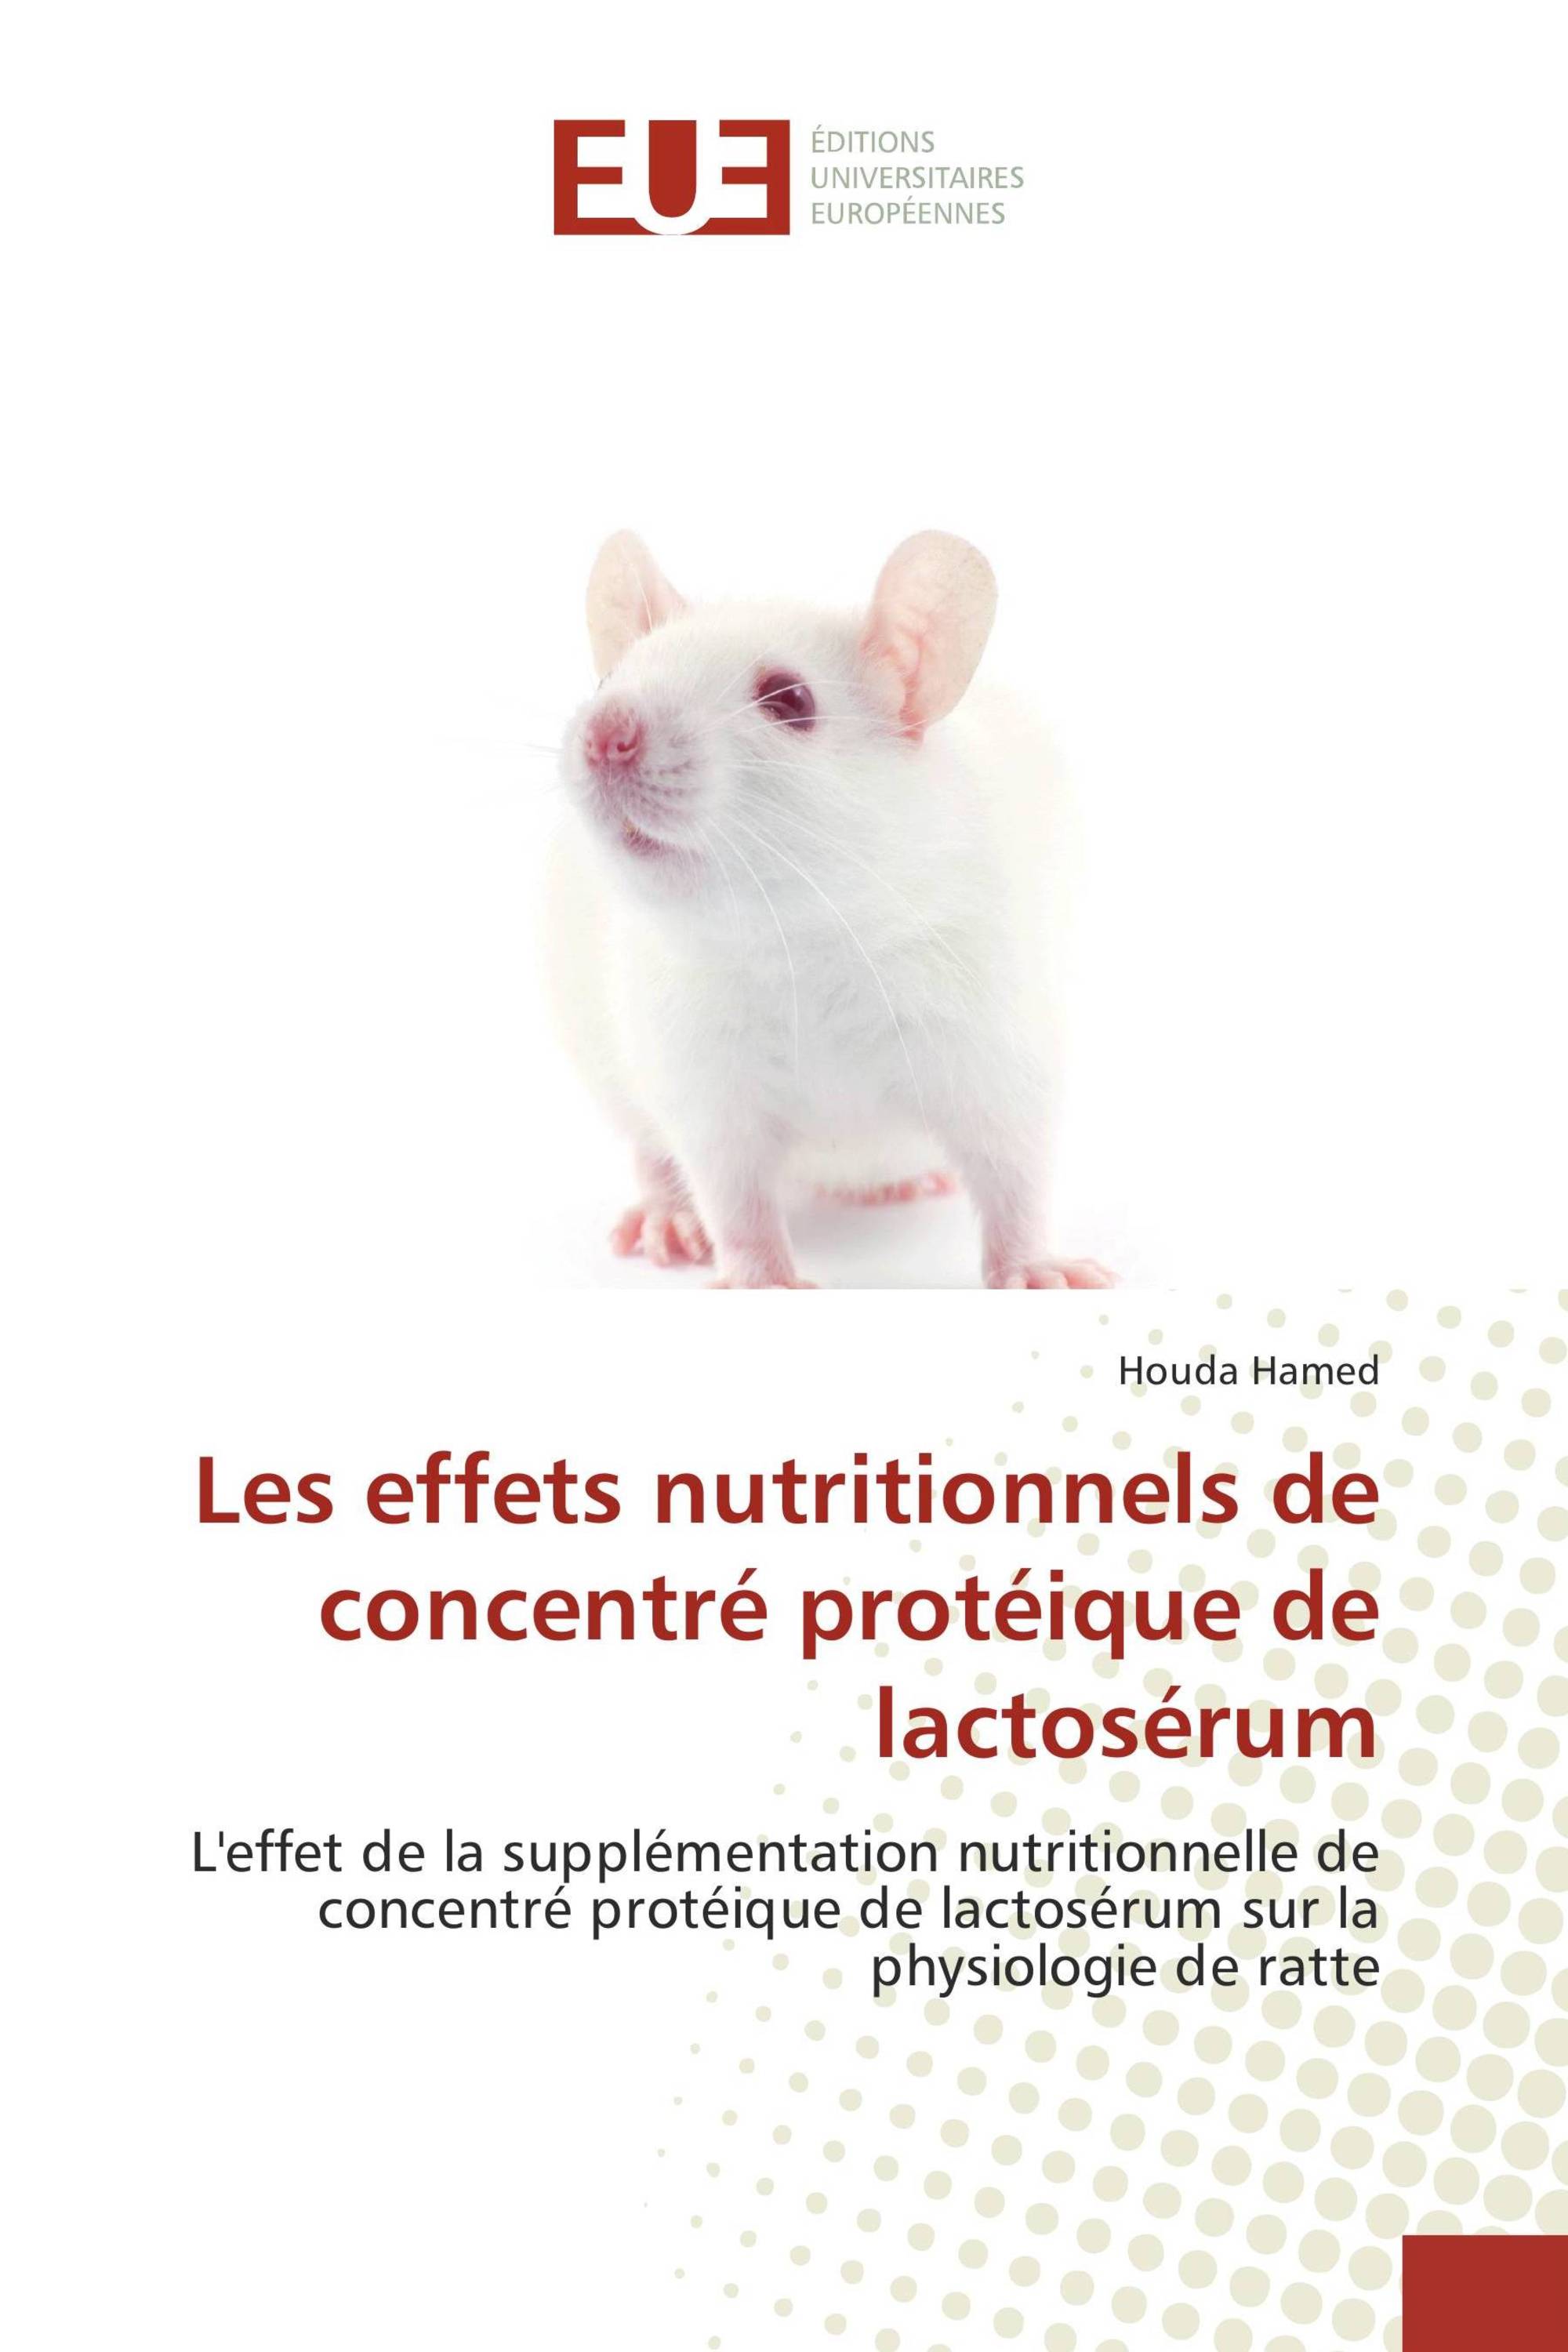 Les effets nutritionnels de concentré protéique de lactosérum